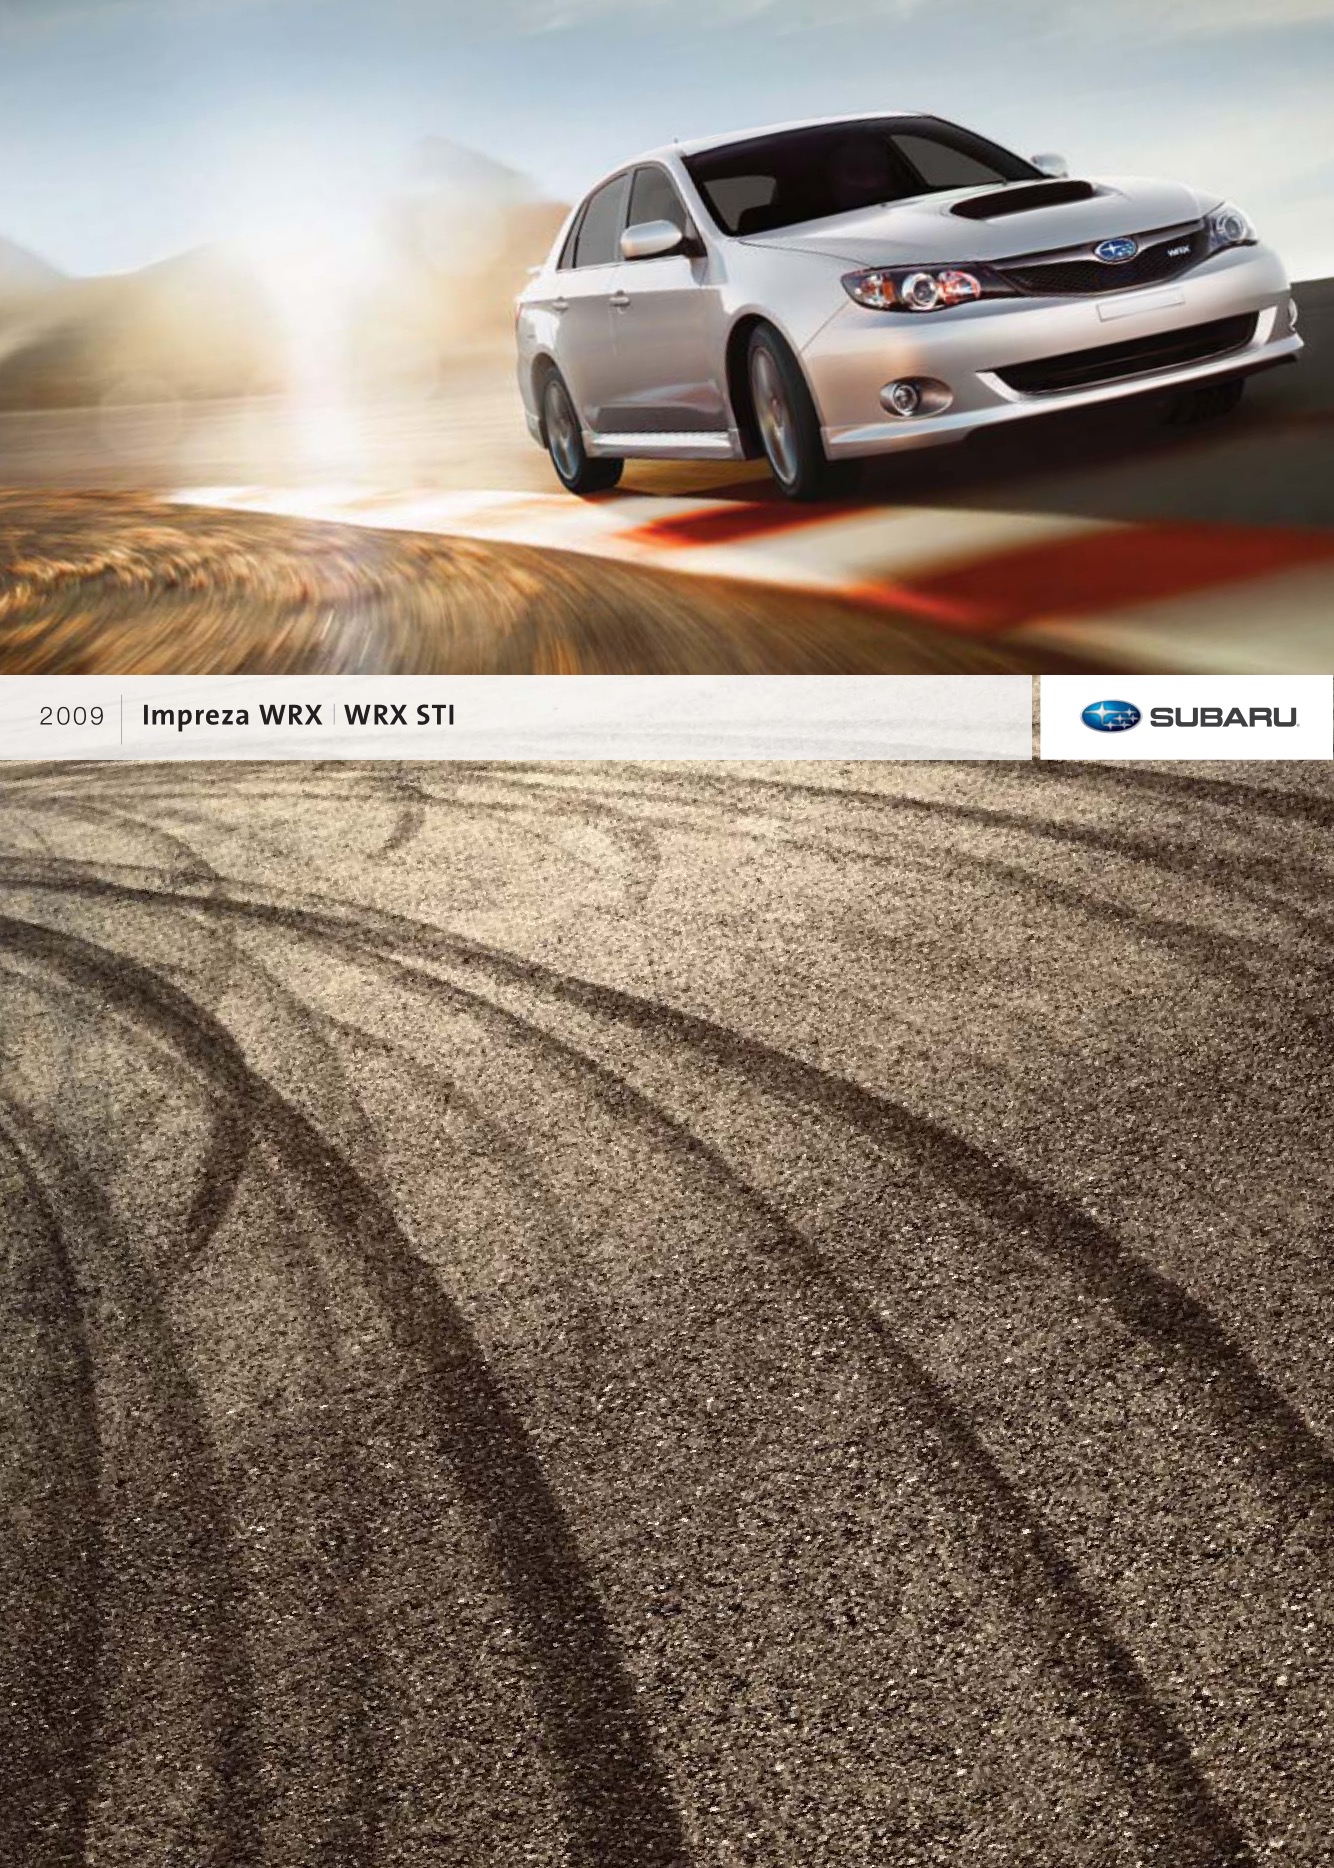 2009 Subaru Impreza WRX Brochure Page 6